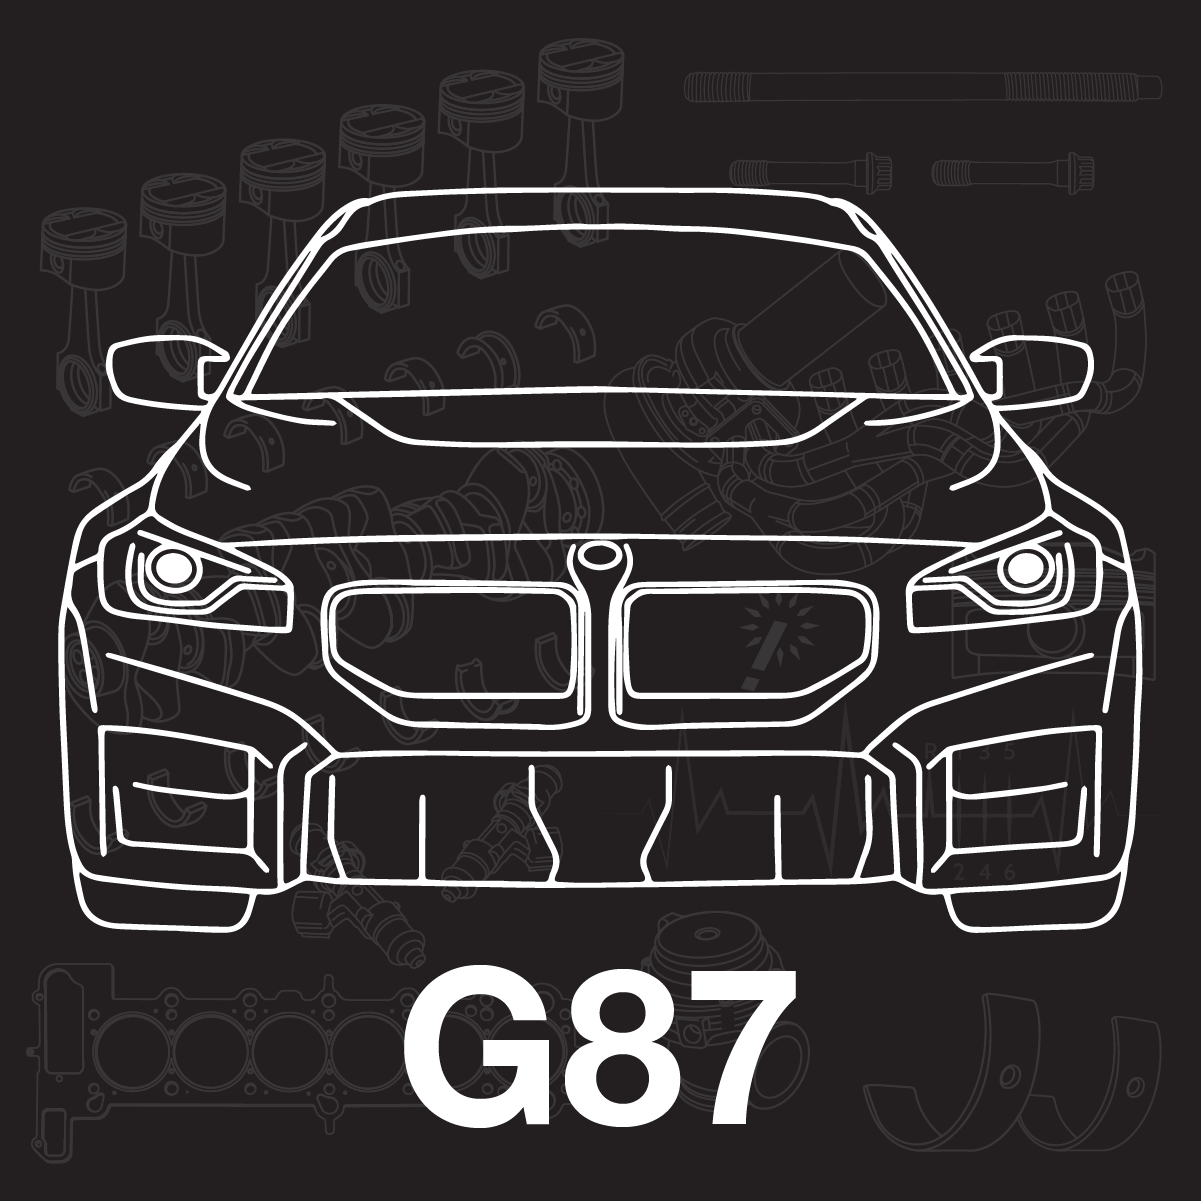 G87